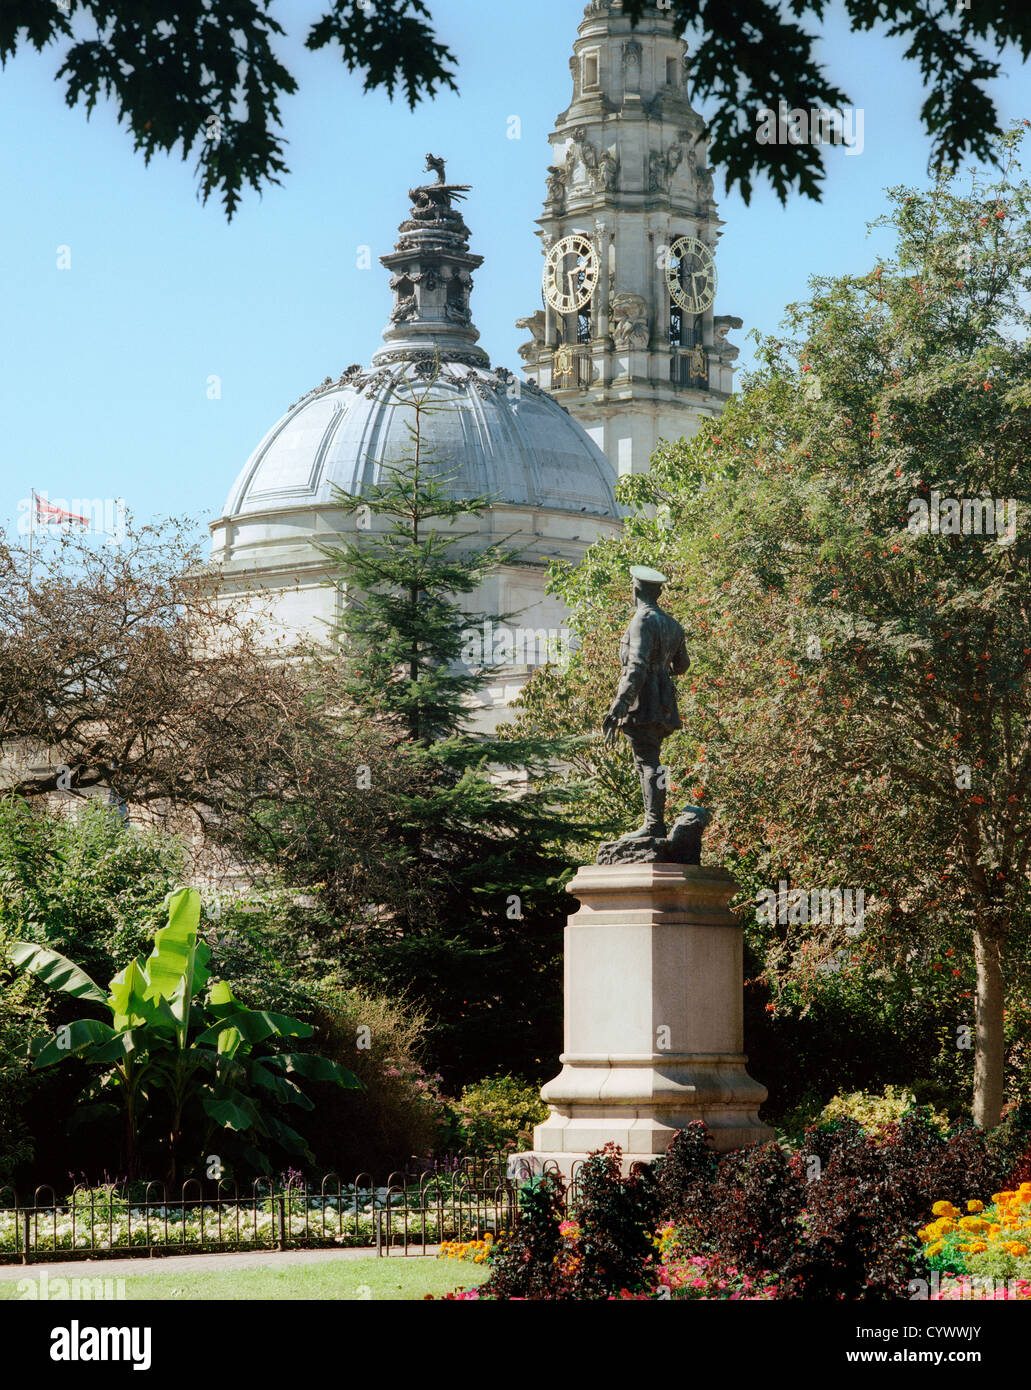 Gorsedd Gärten, Cathays Park, Cardiff, mit Statue von Lord Ninian und die Kuppel und Glockenturm des Rathauses Stockfoto